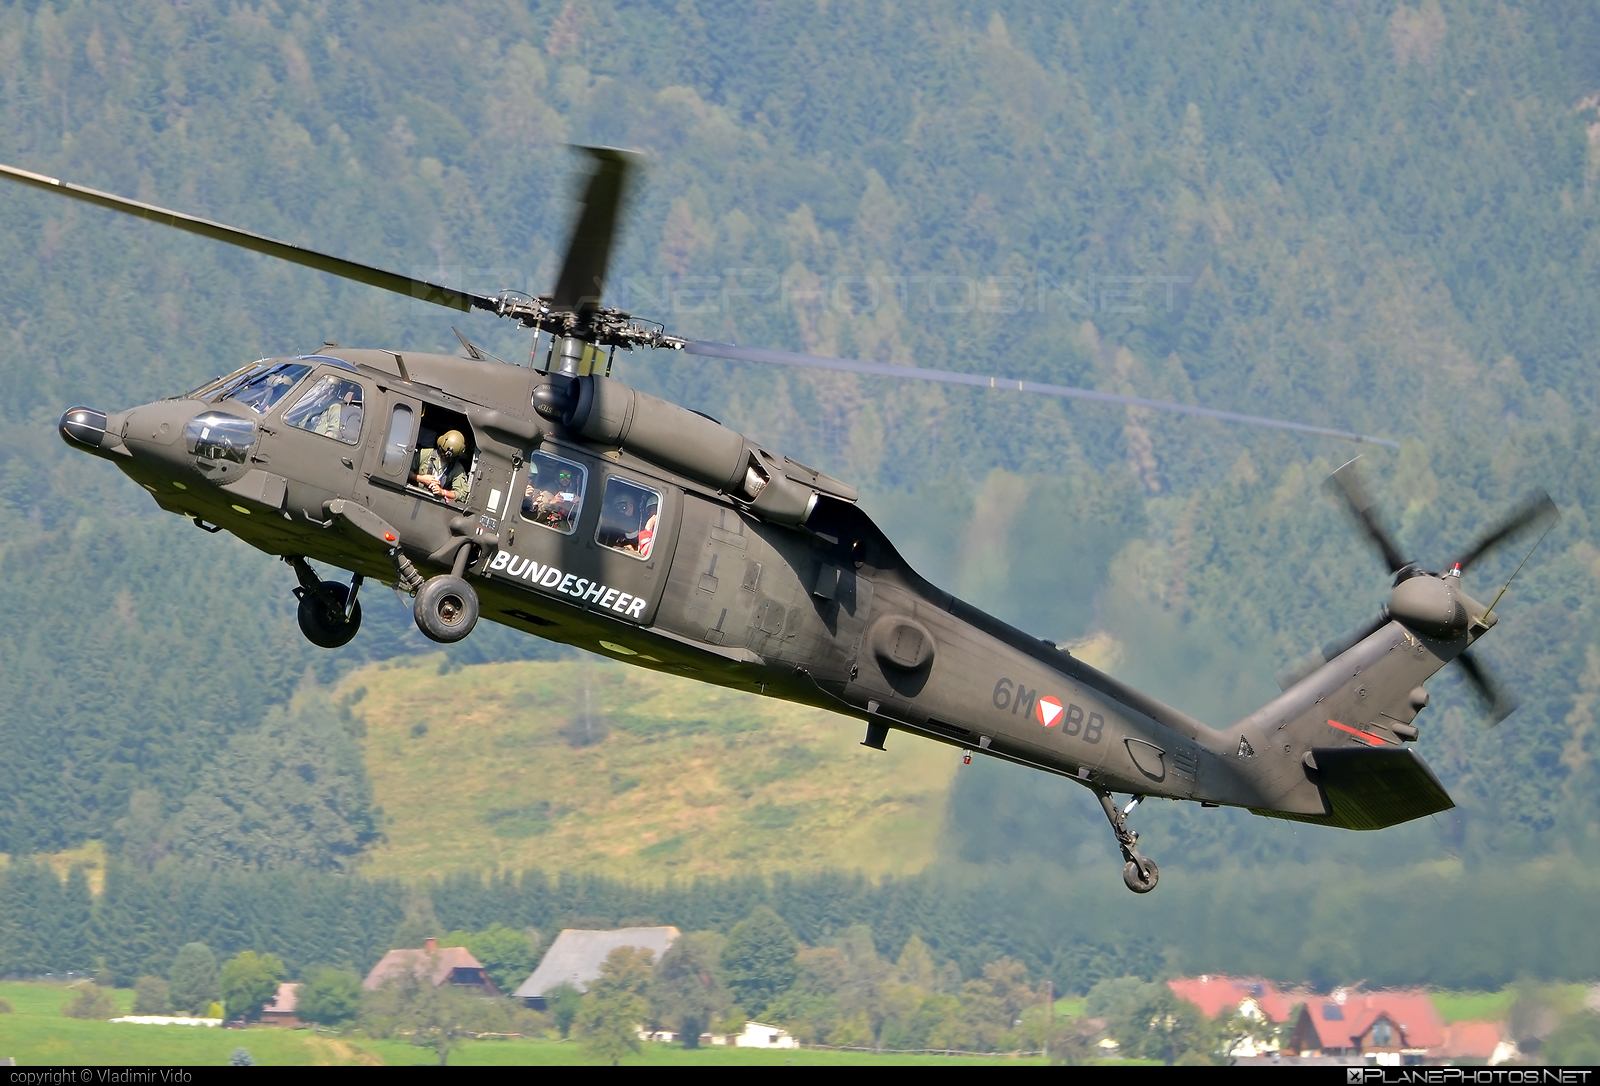 Sikorsky S-70A-42 Black Hawk - 6M-BB operated by Österreichische Luftstreitkräfte (Austrian Air Force) #airpower2016 #austrianairforce #blackhawk #s70 #s70a42 #s70a42blackhawk #sikorsky #sikorskys70